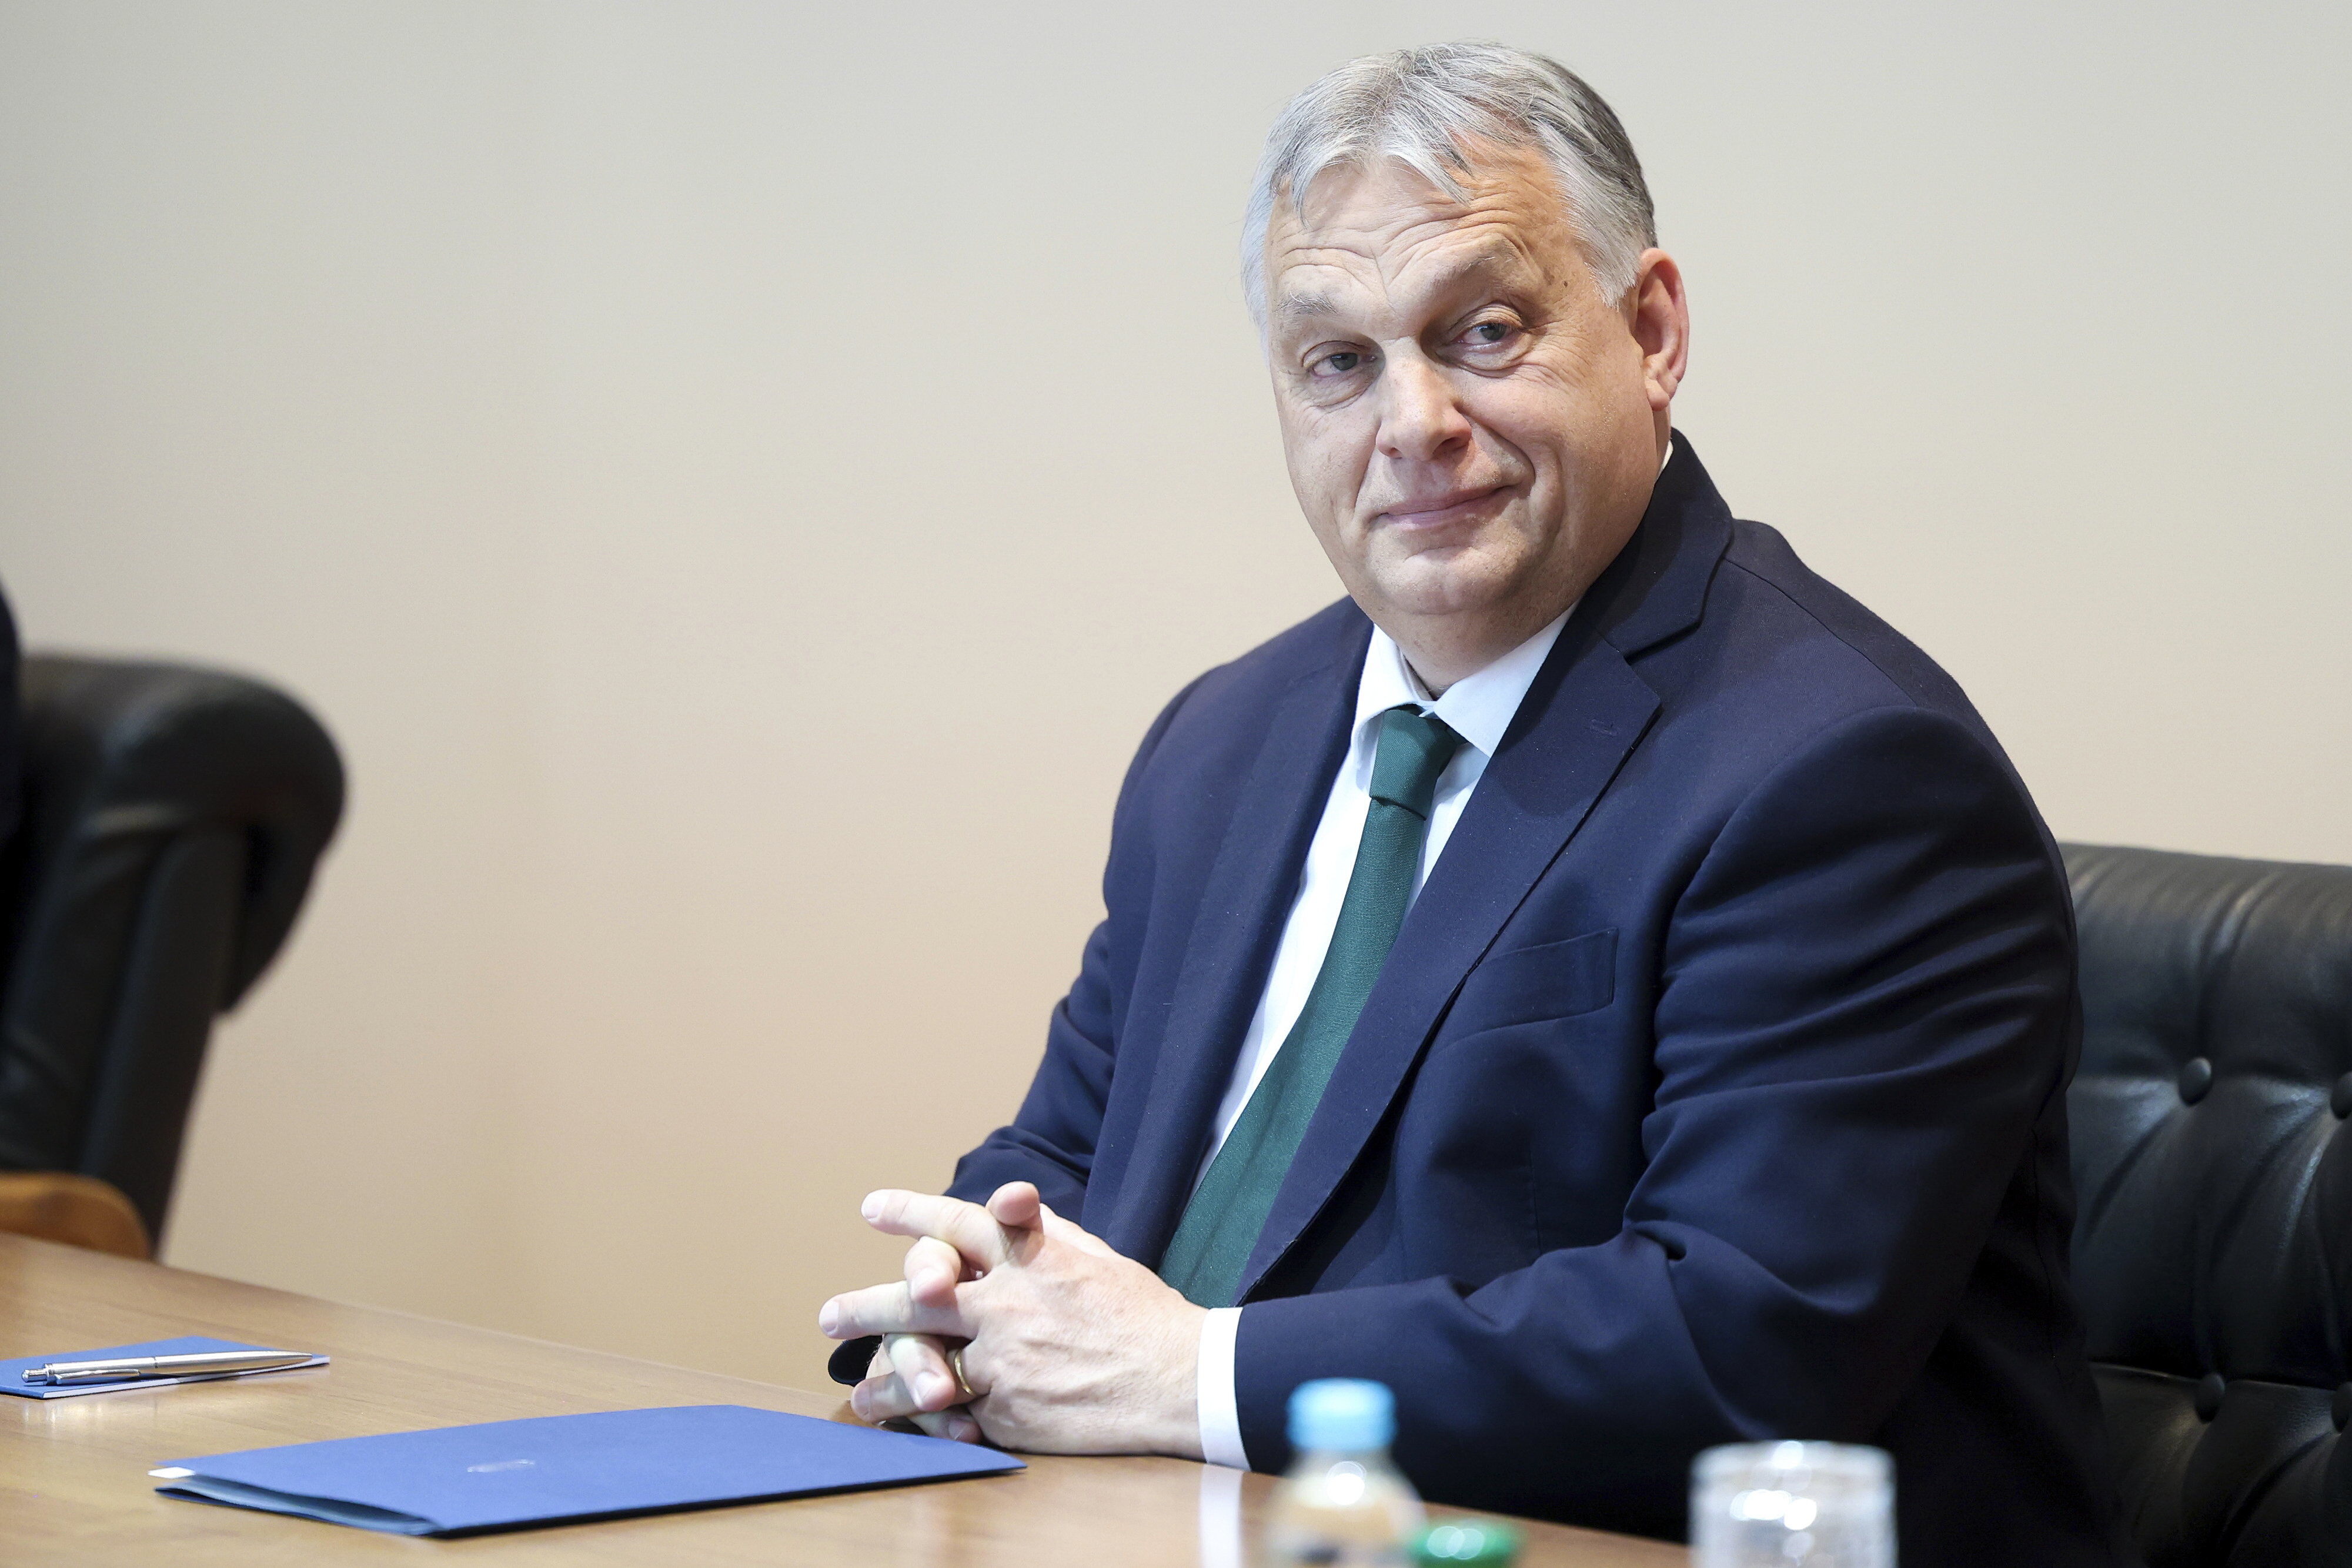 rachat d’euronews : des proches du populiste hongrois viktor orbán impliqués dans la transaction